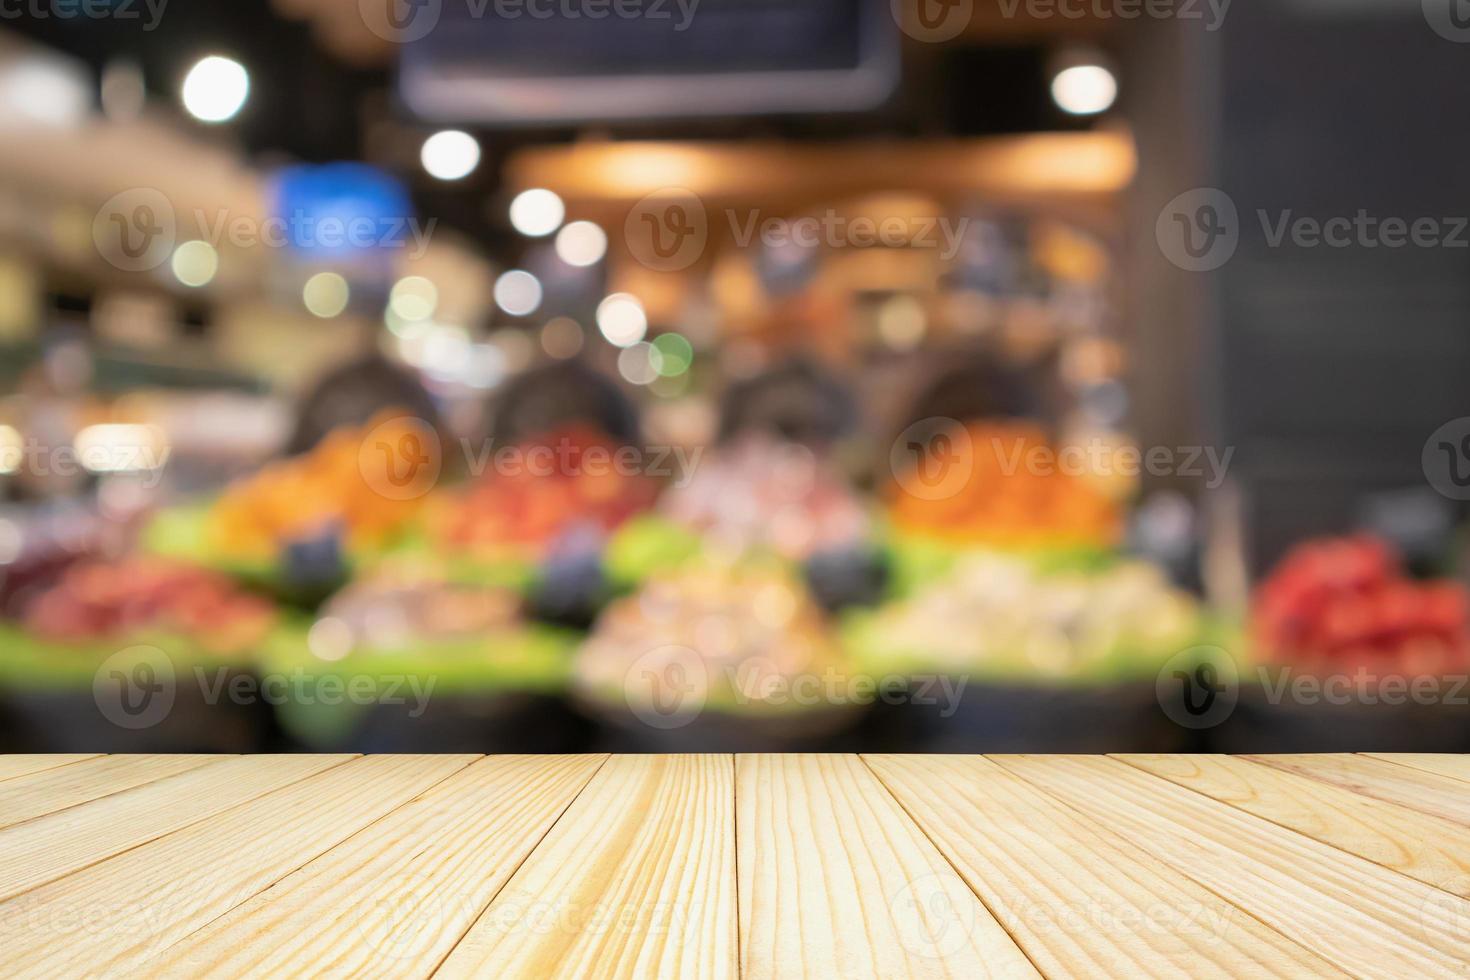 tampo da mesa de madeira vazia com frutas coloridas desfocadas abstratas na cesta de exibição na mercearia de supermercado fundo desfocado com luz bokeh foto